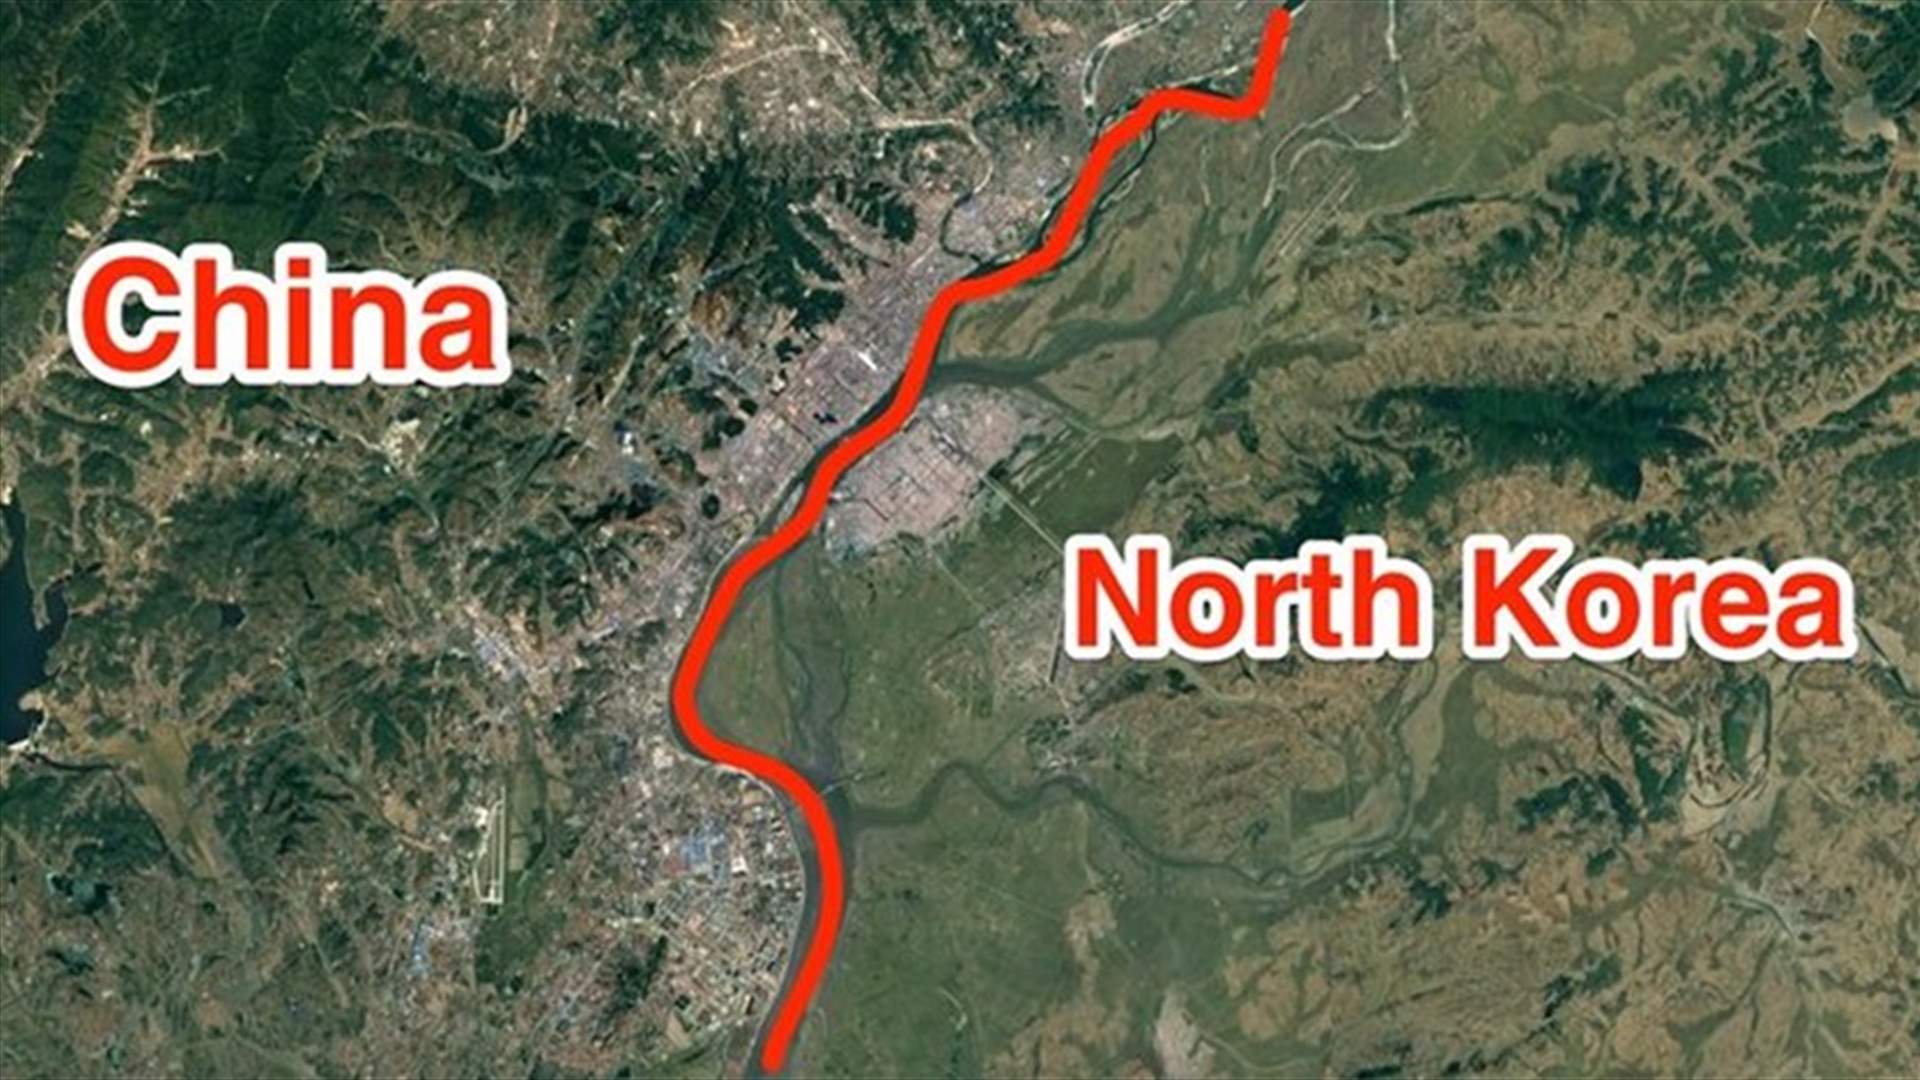 بعد الهزّة التي وقعت قرب الحدود بين الصين وكوريا الشمالية... هذا ما تبين